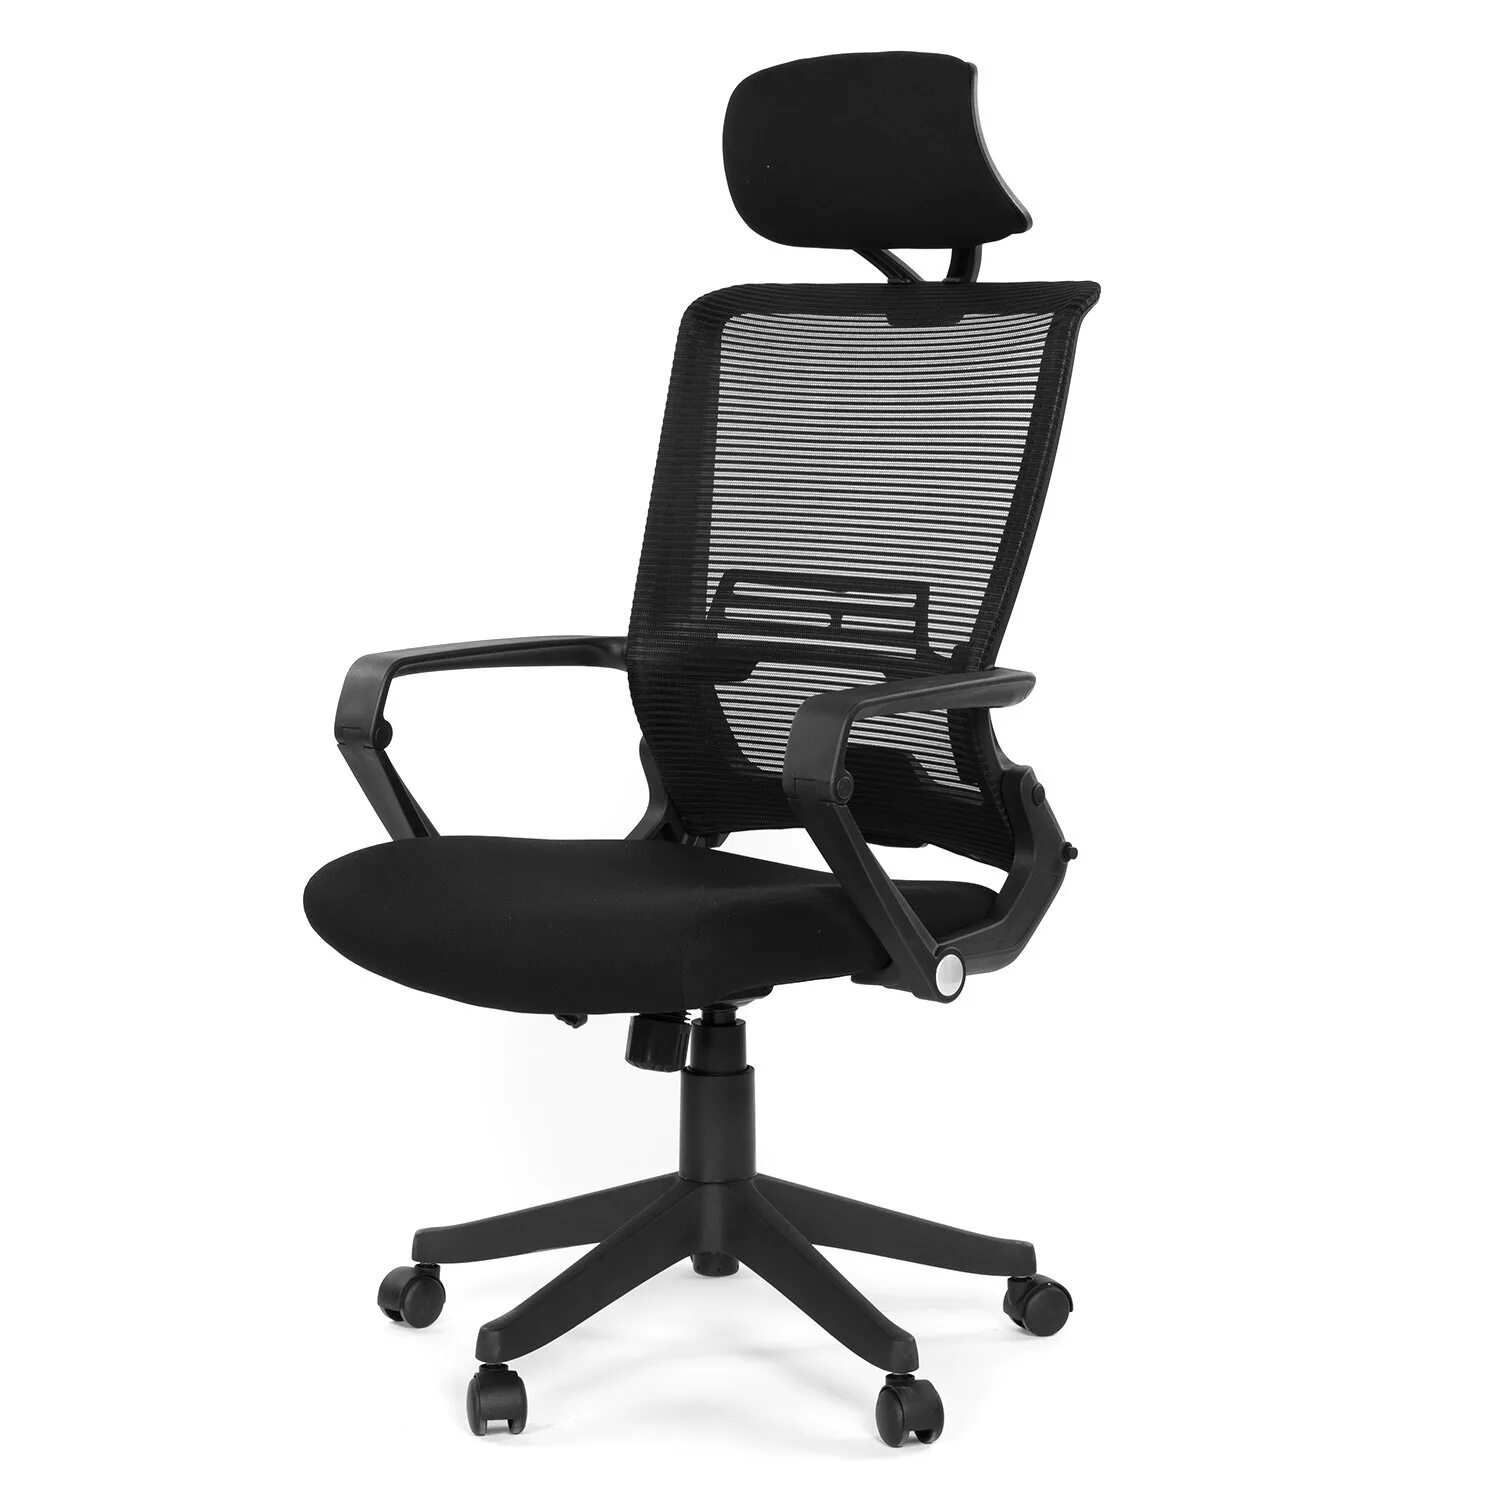 Кресло с поддержками офисное. Кресло AG Grid Office Chair lb. Кресло HLC 1500. Кресло эргономичное defo с подголовником. Ergonomic Dream кресло офисное.